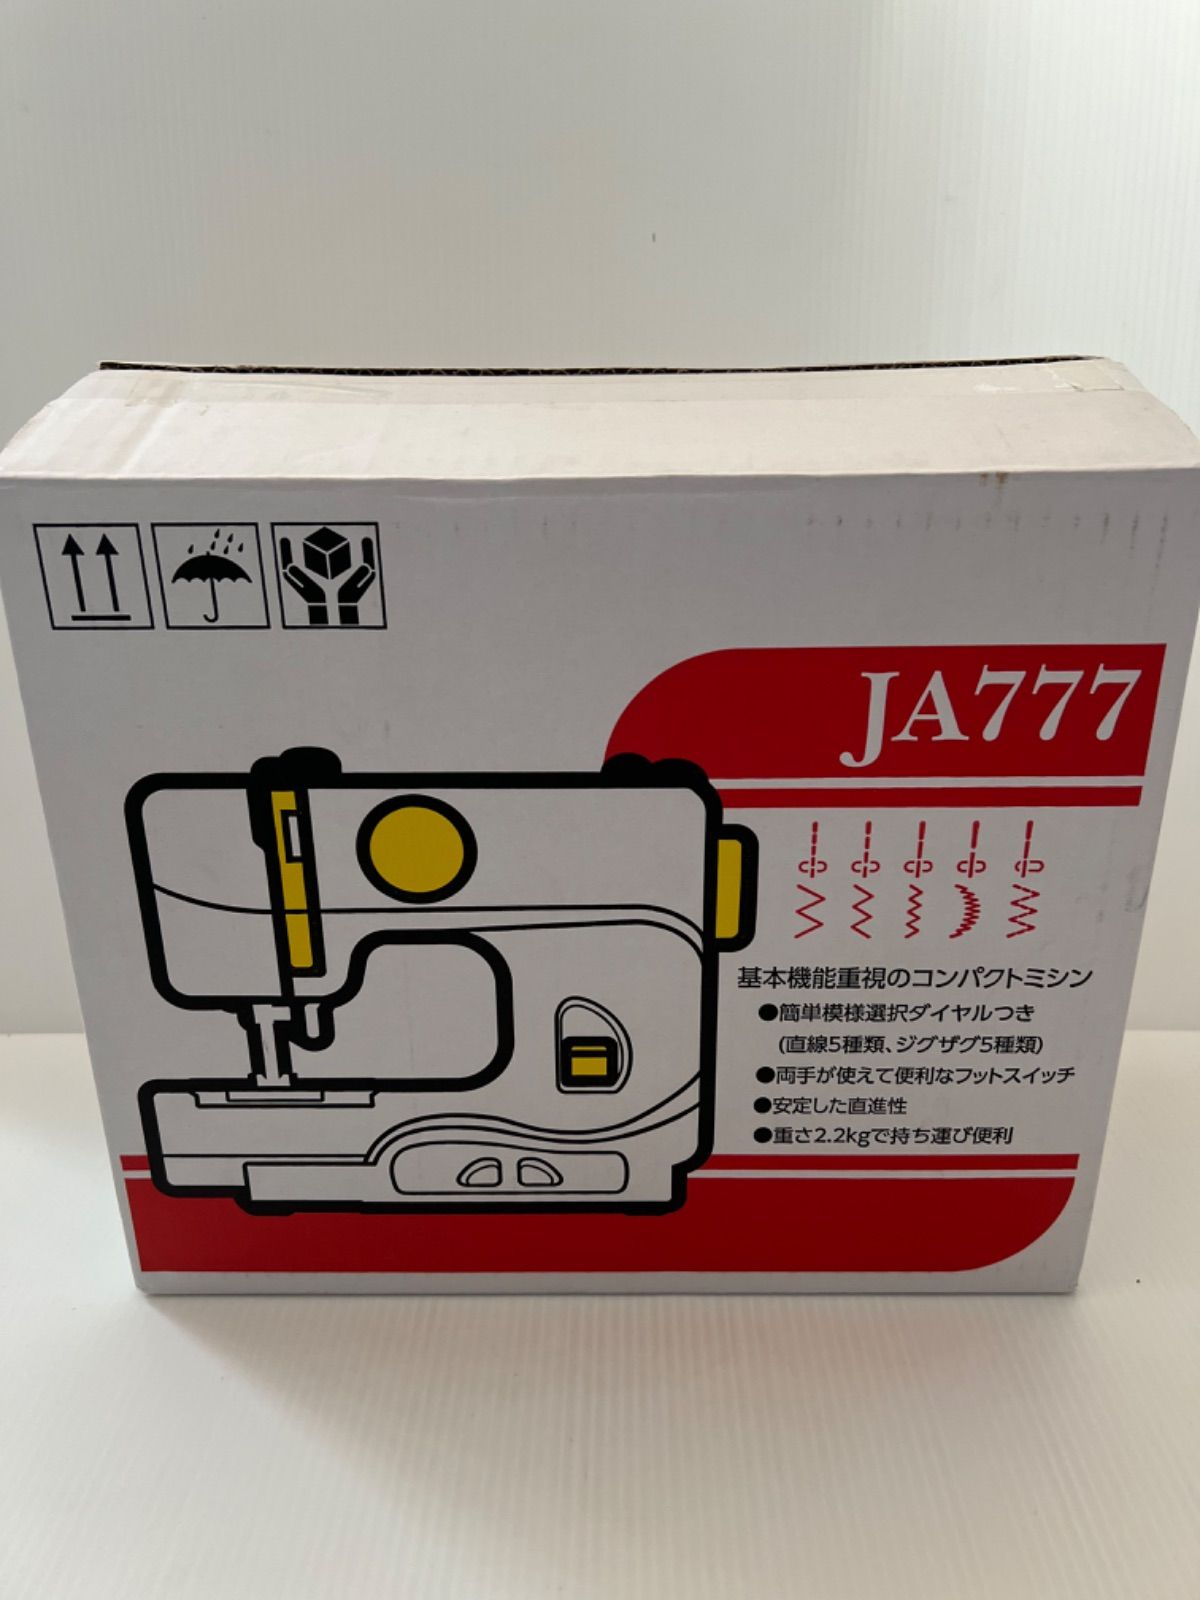 JANOME コンパクト電動ミシン フットスイッチ付き JA777 - メルカリ